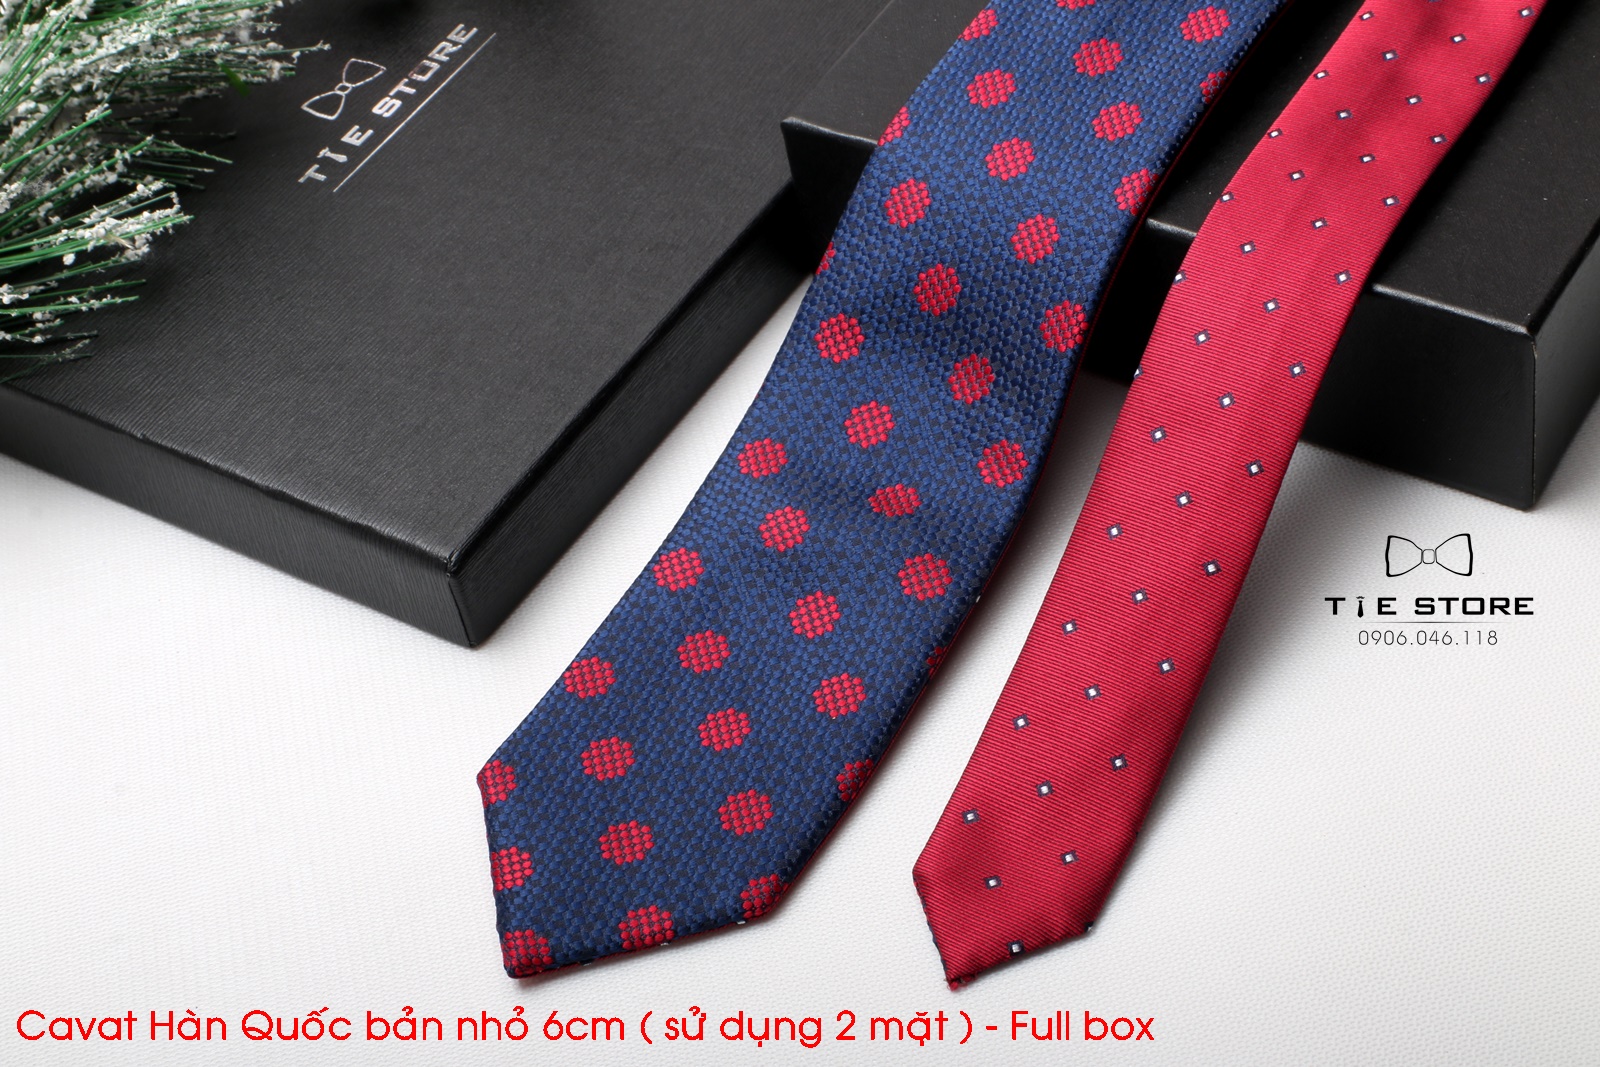 Cà Vạt Nam Bản nhỏ 6cm đen chấm bi đỏ - Cavat Hàn Quốc Cao Cấp Full box